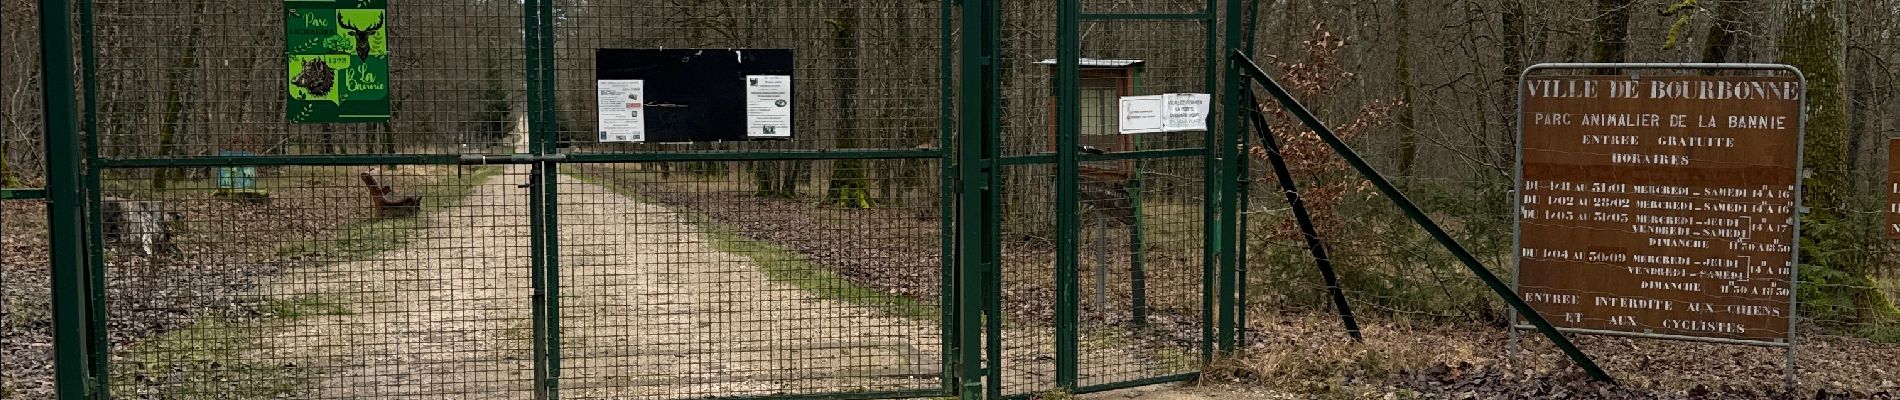 Trail  Coiffy-le-Haut - Trace pour parc animalier la bannie - Photo